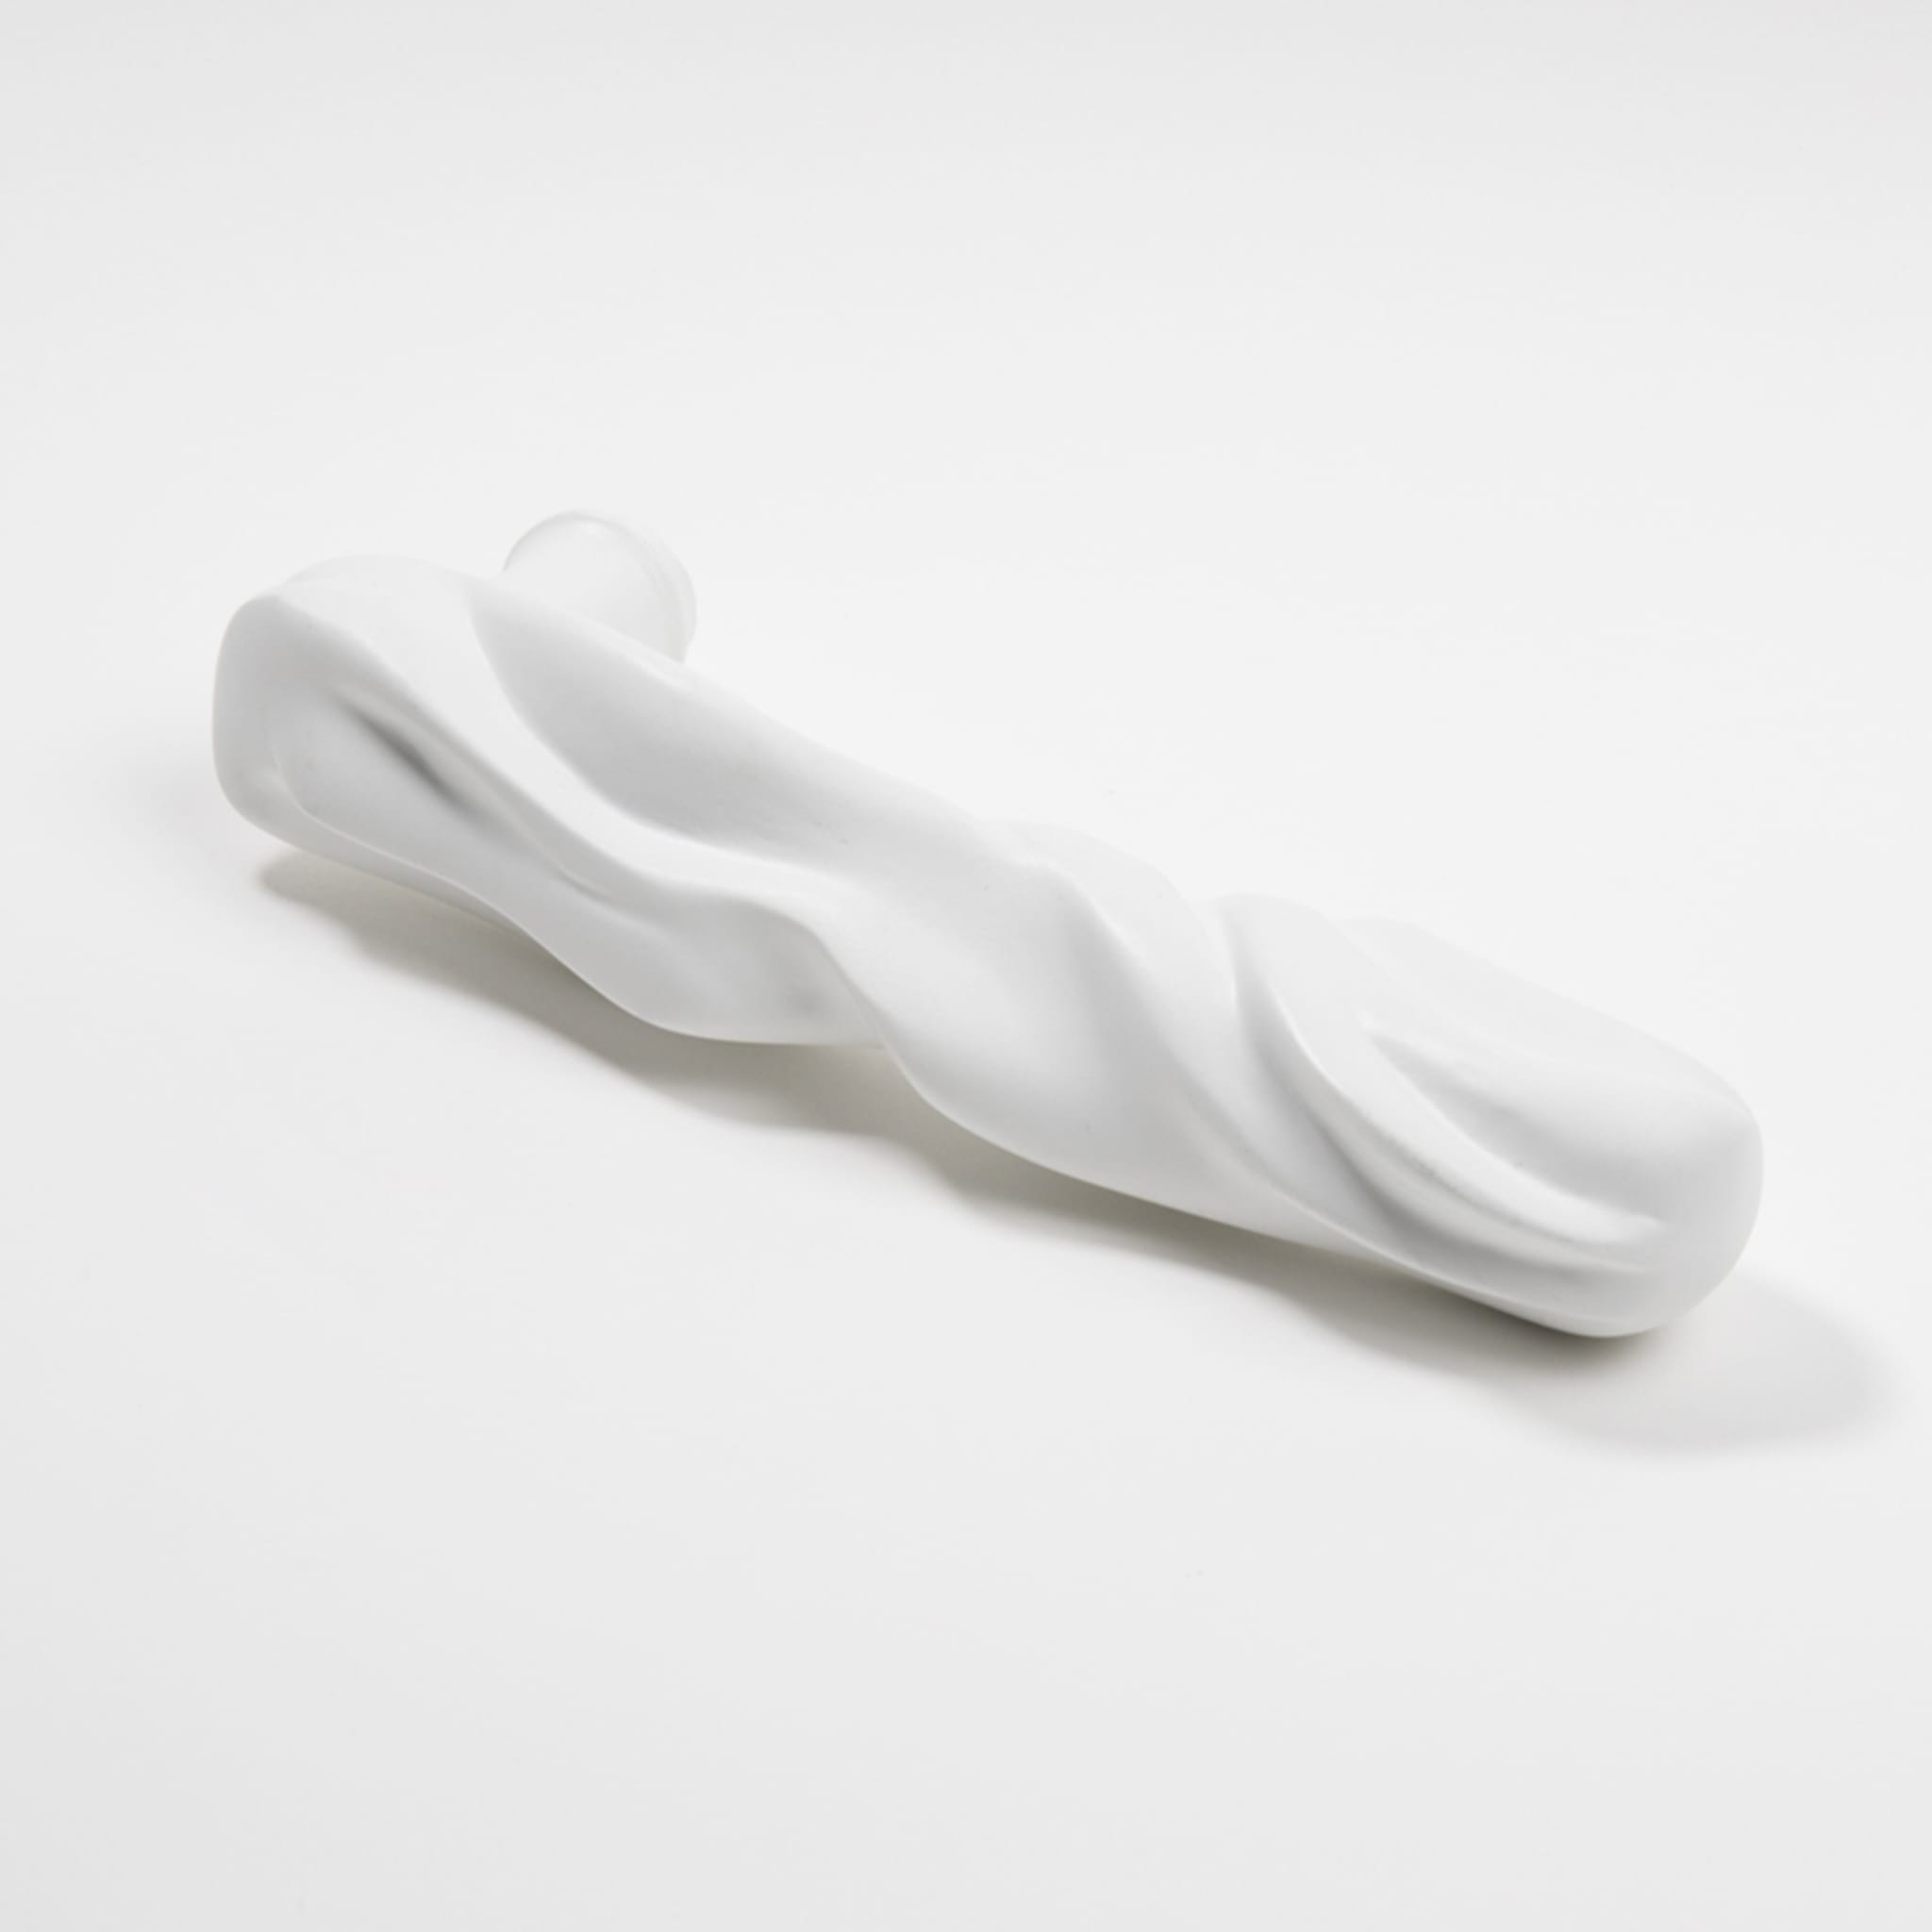 Fiocco White Handle by Nicole Valenti - Alternative view 1